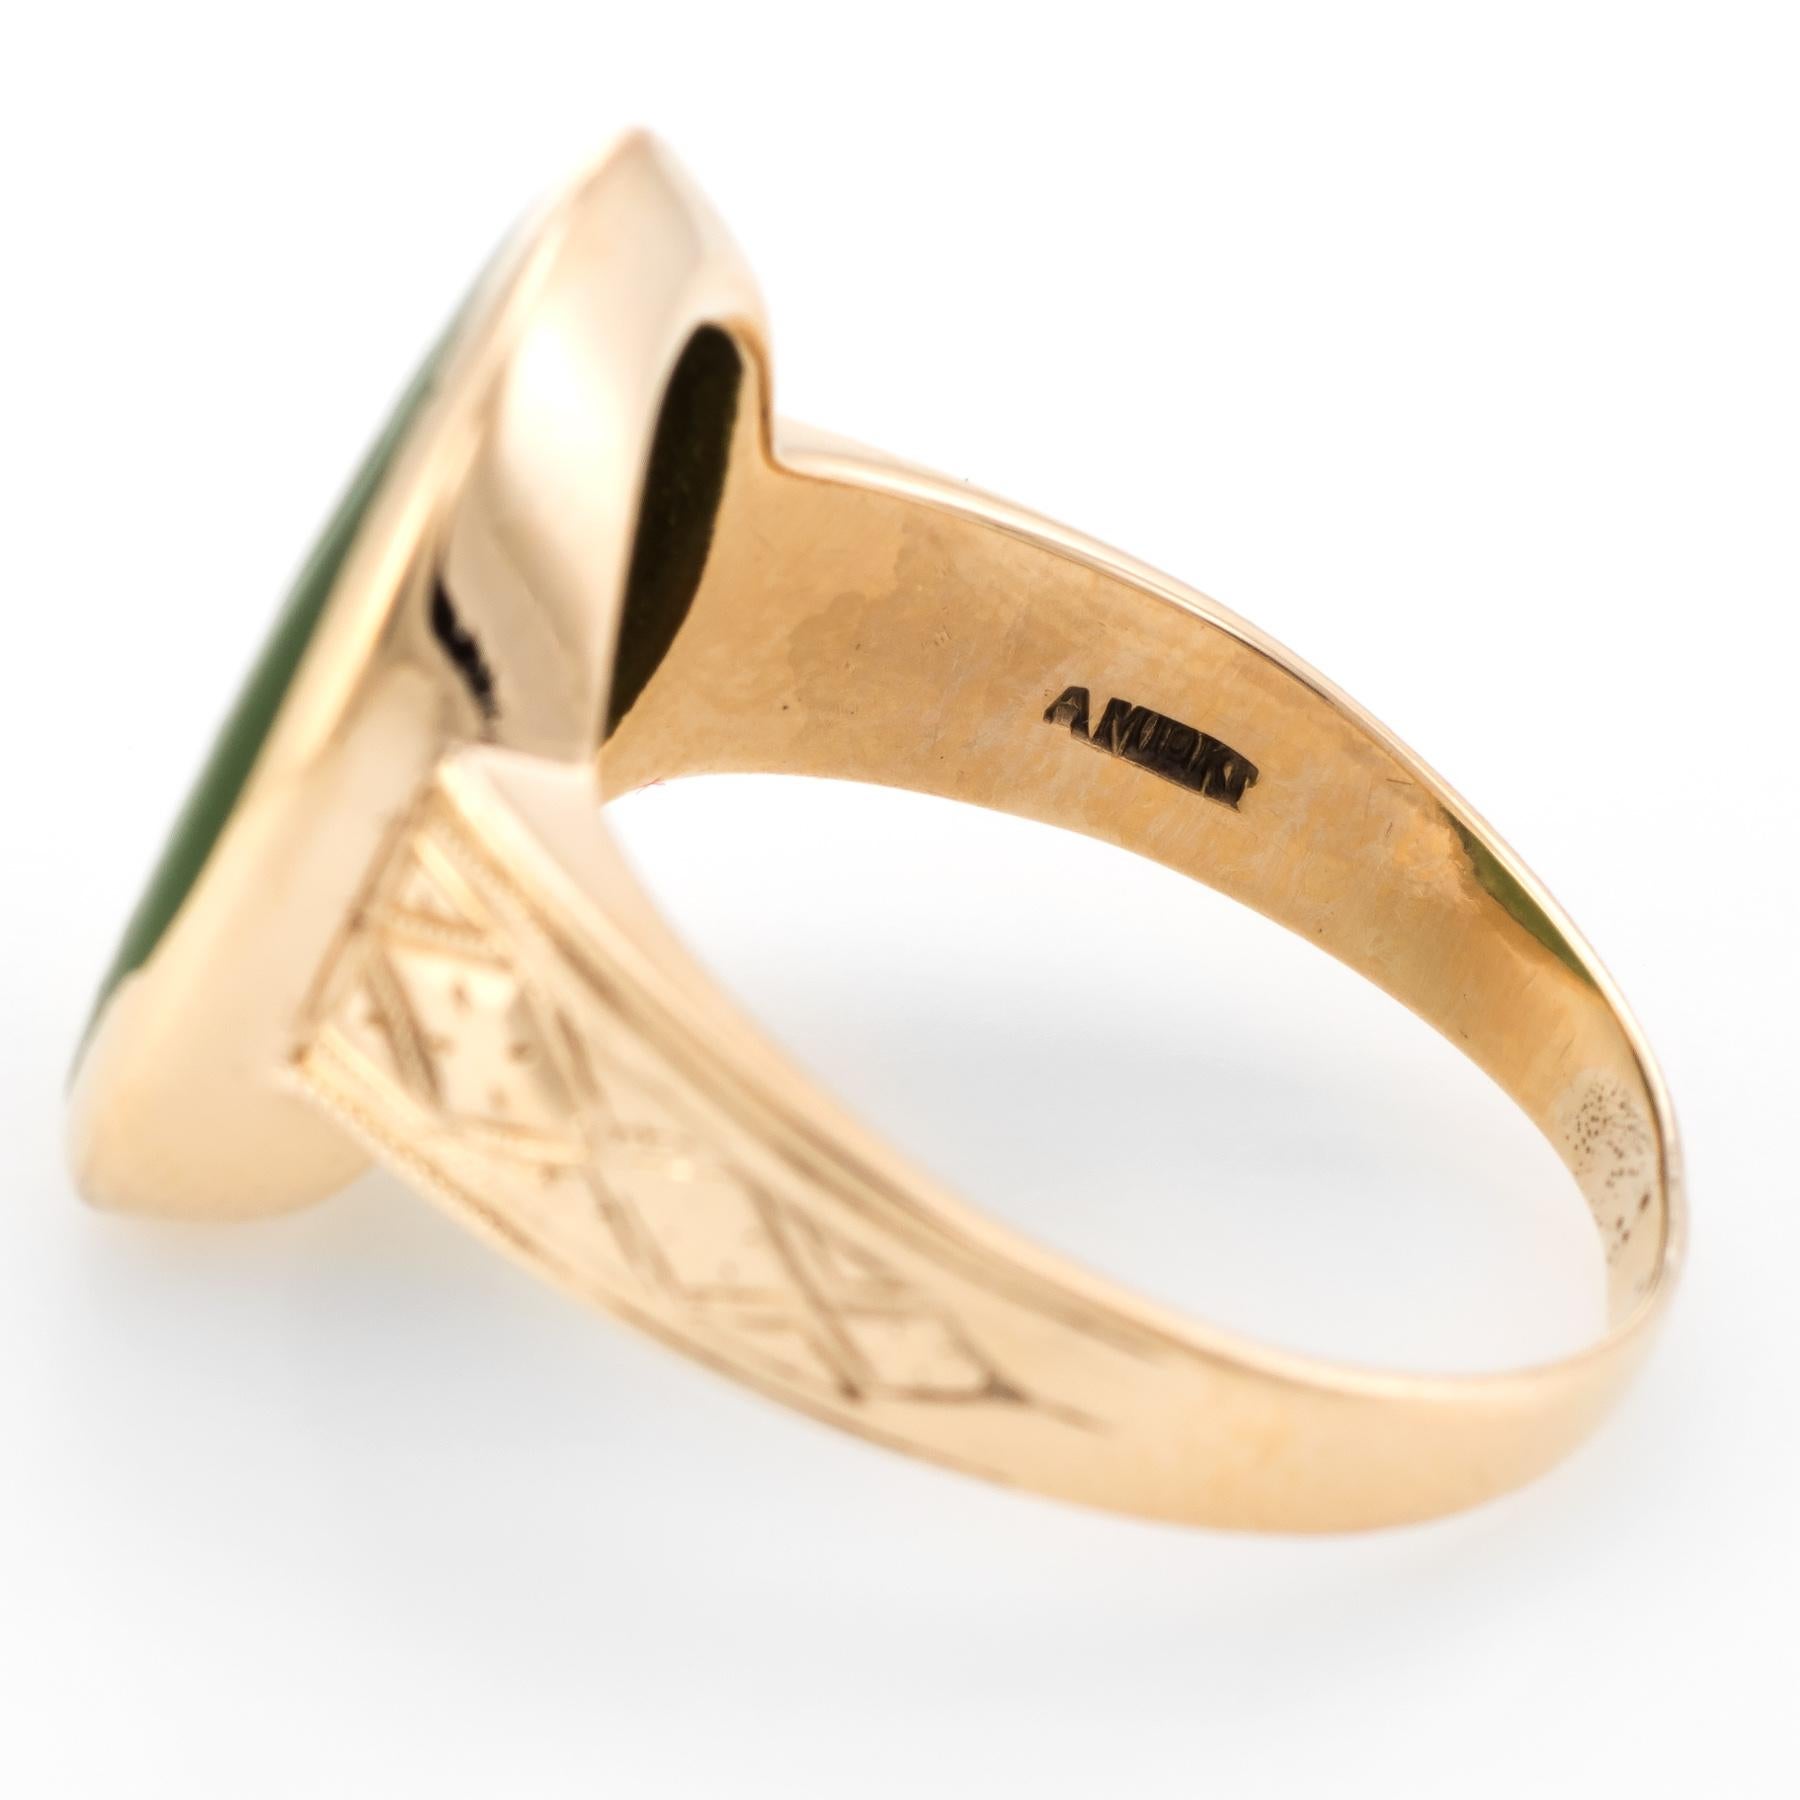 Antique Victorian Intaglio Ring Green Agate 10 Karat Yellow Gold Soldier Warrior 1